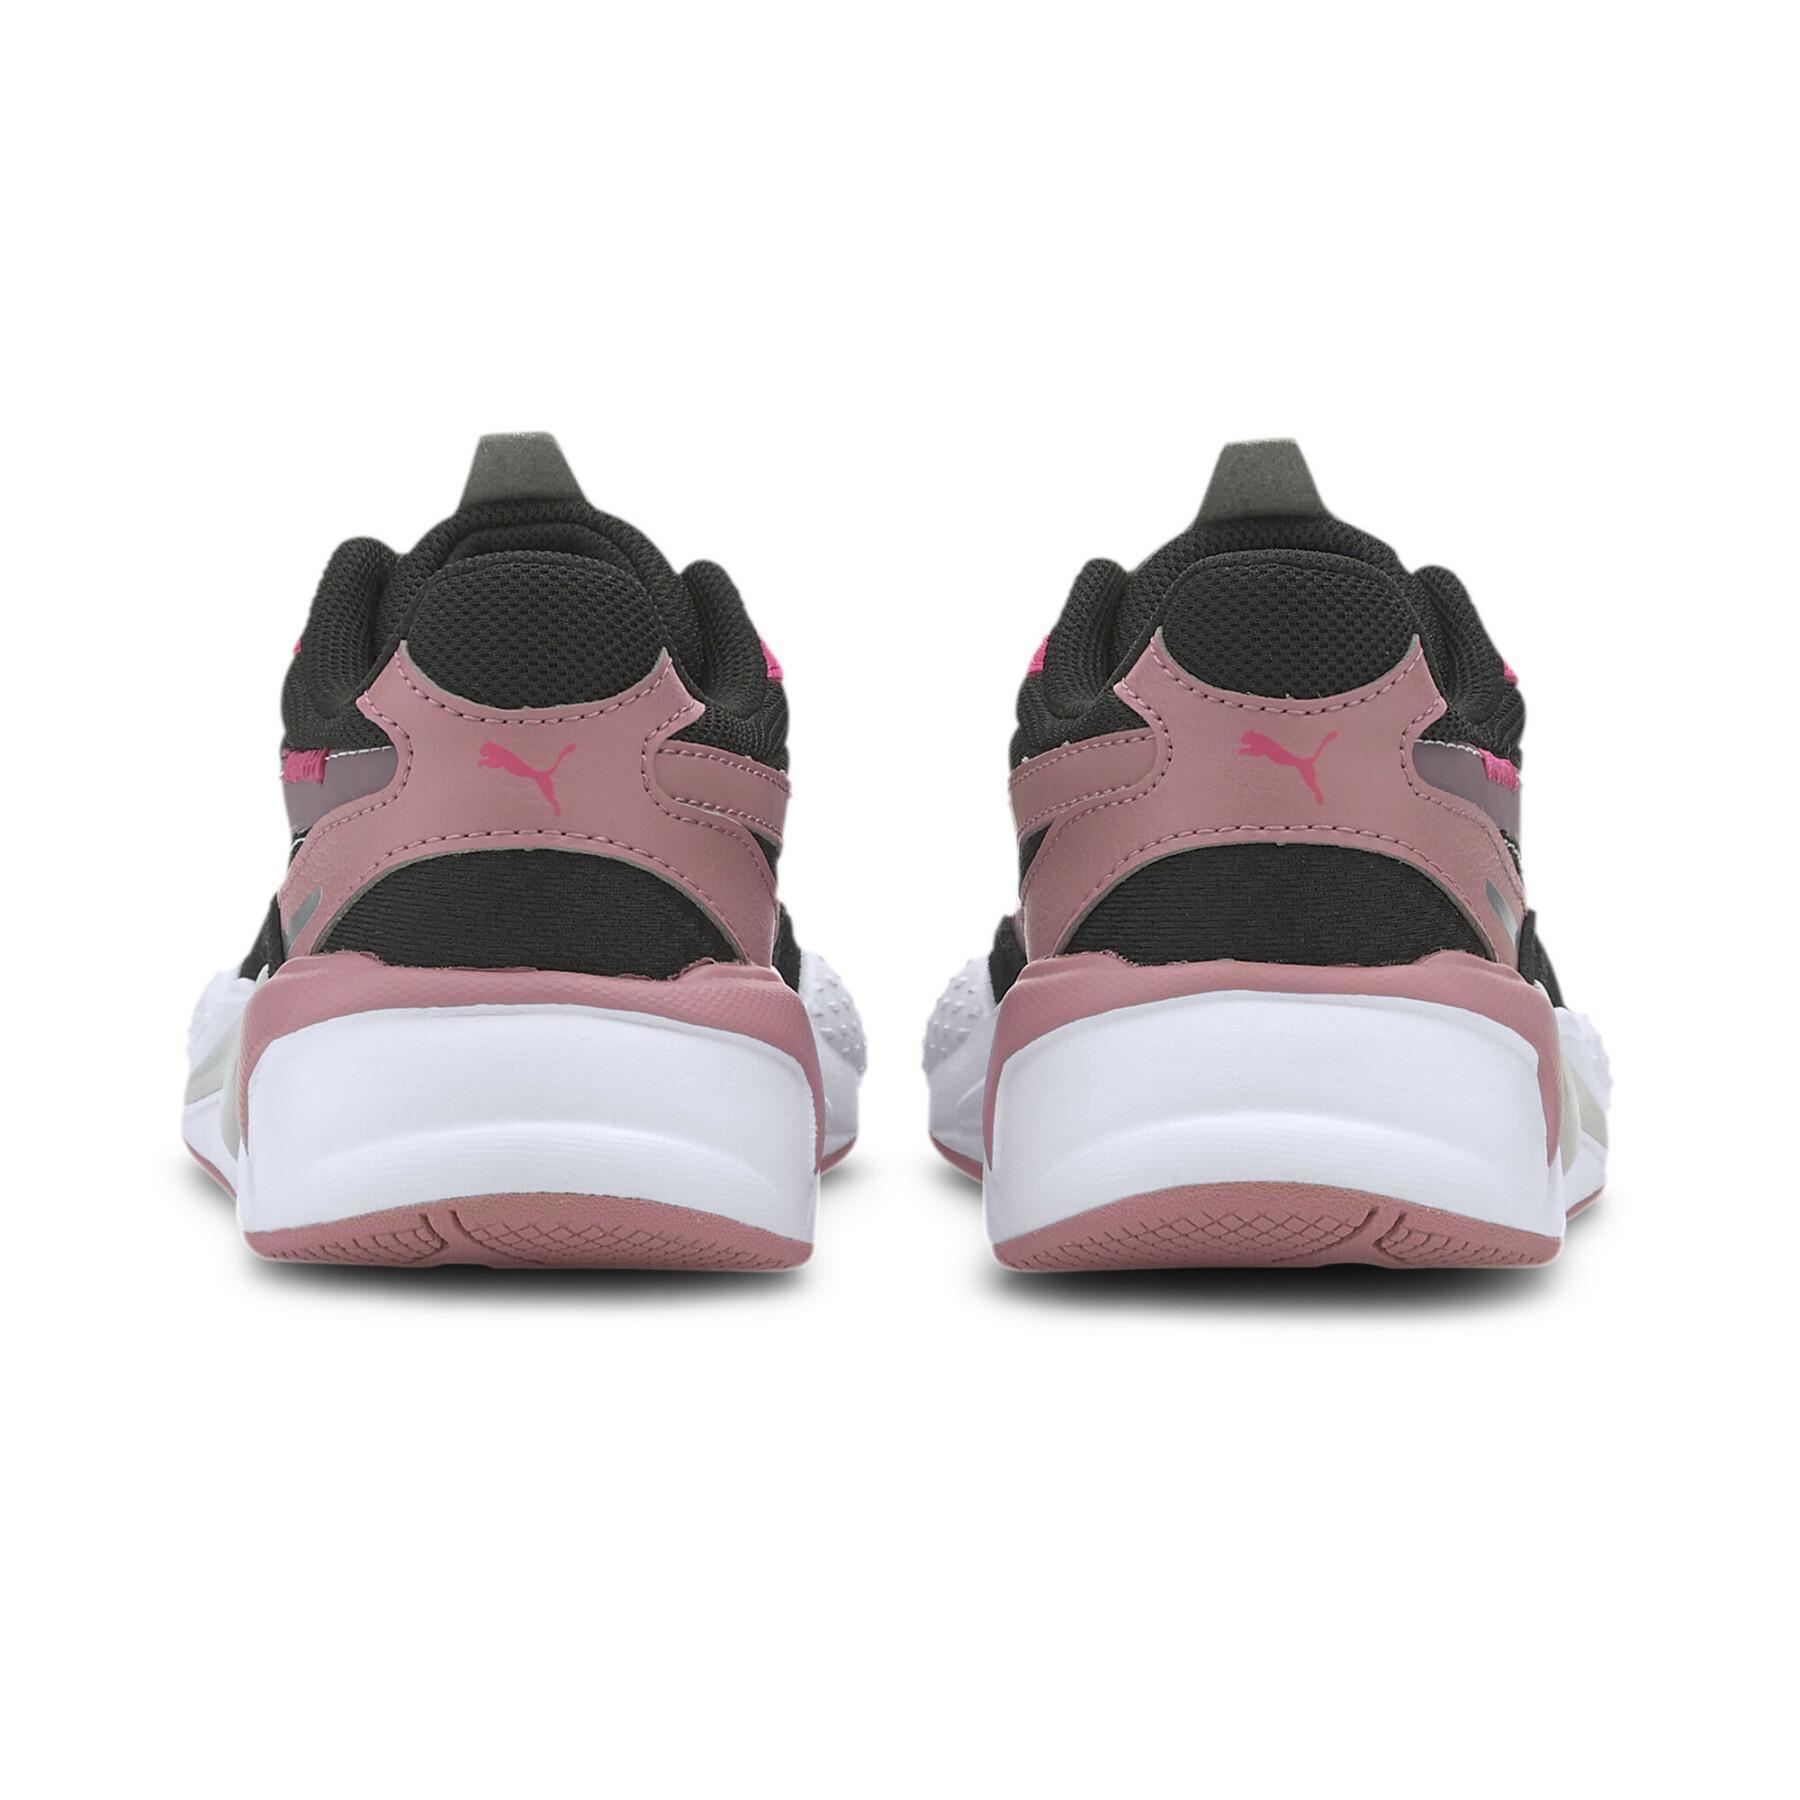 Zapatos para niños Puma RS-X³ City Attack PS